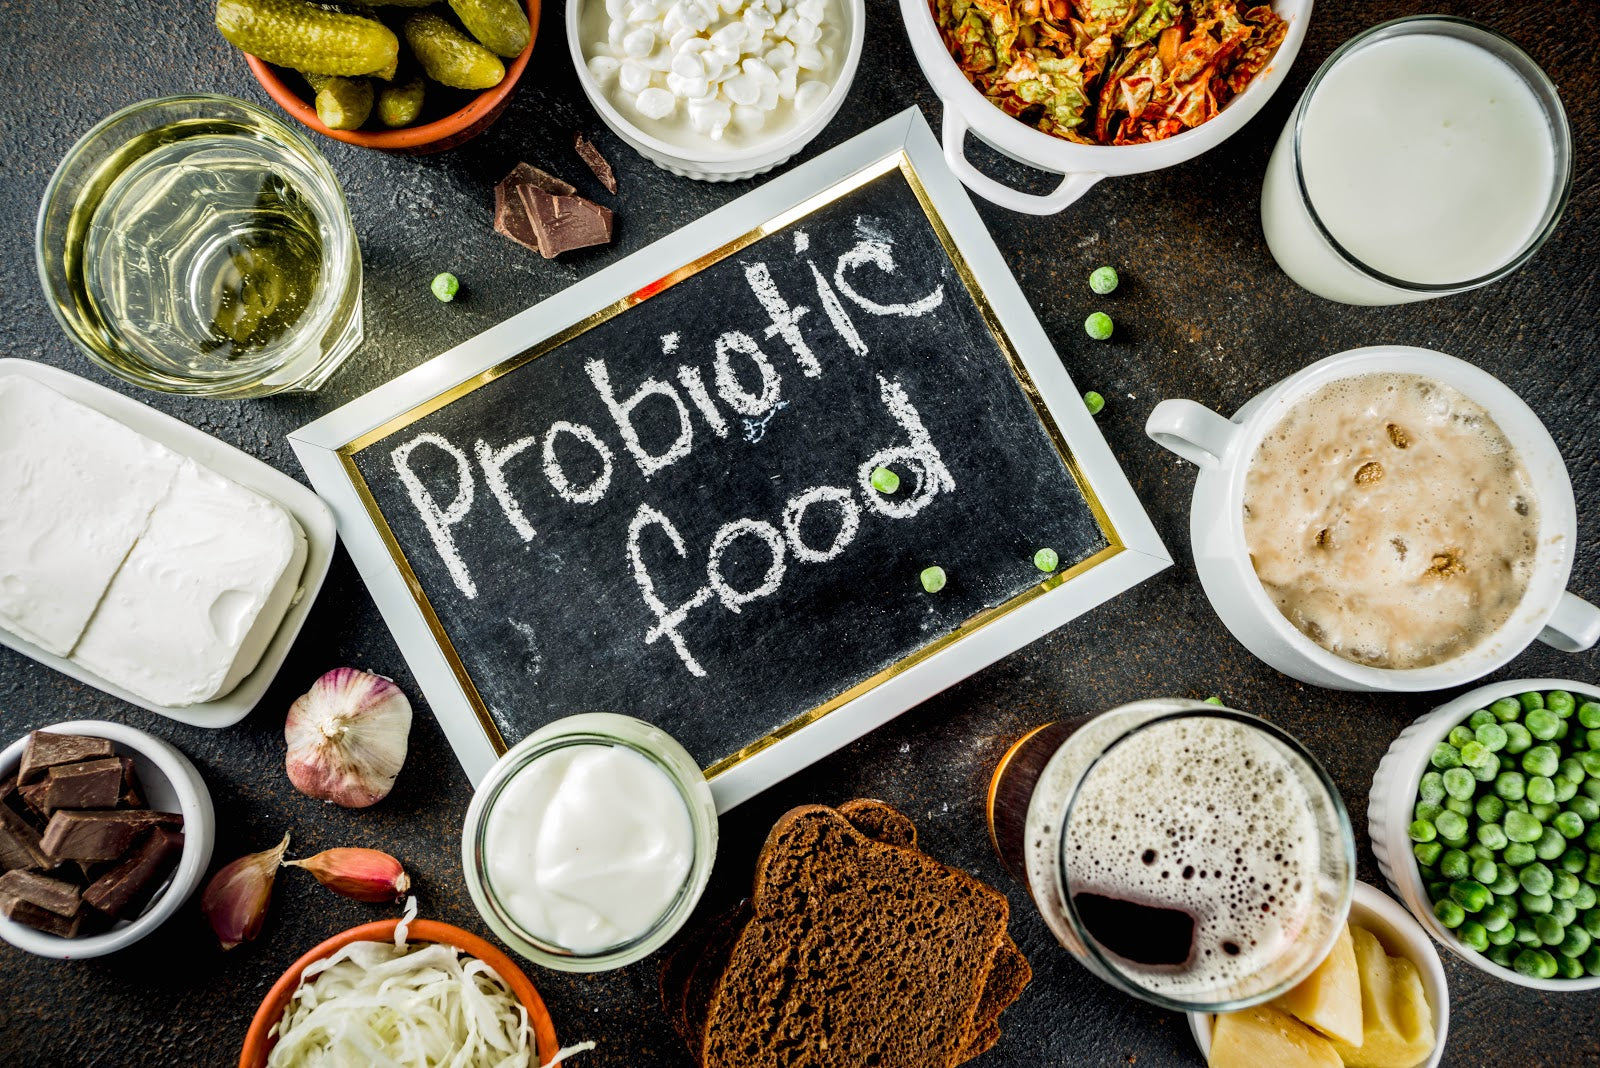 probiotic-foods-surrounding-chalkboard